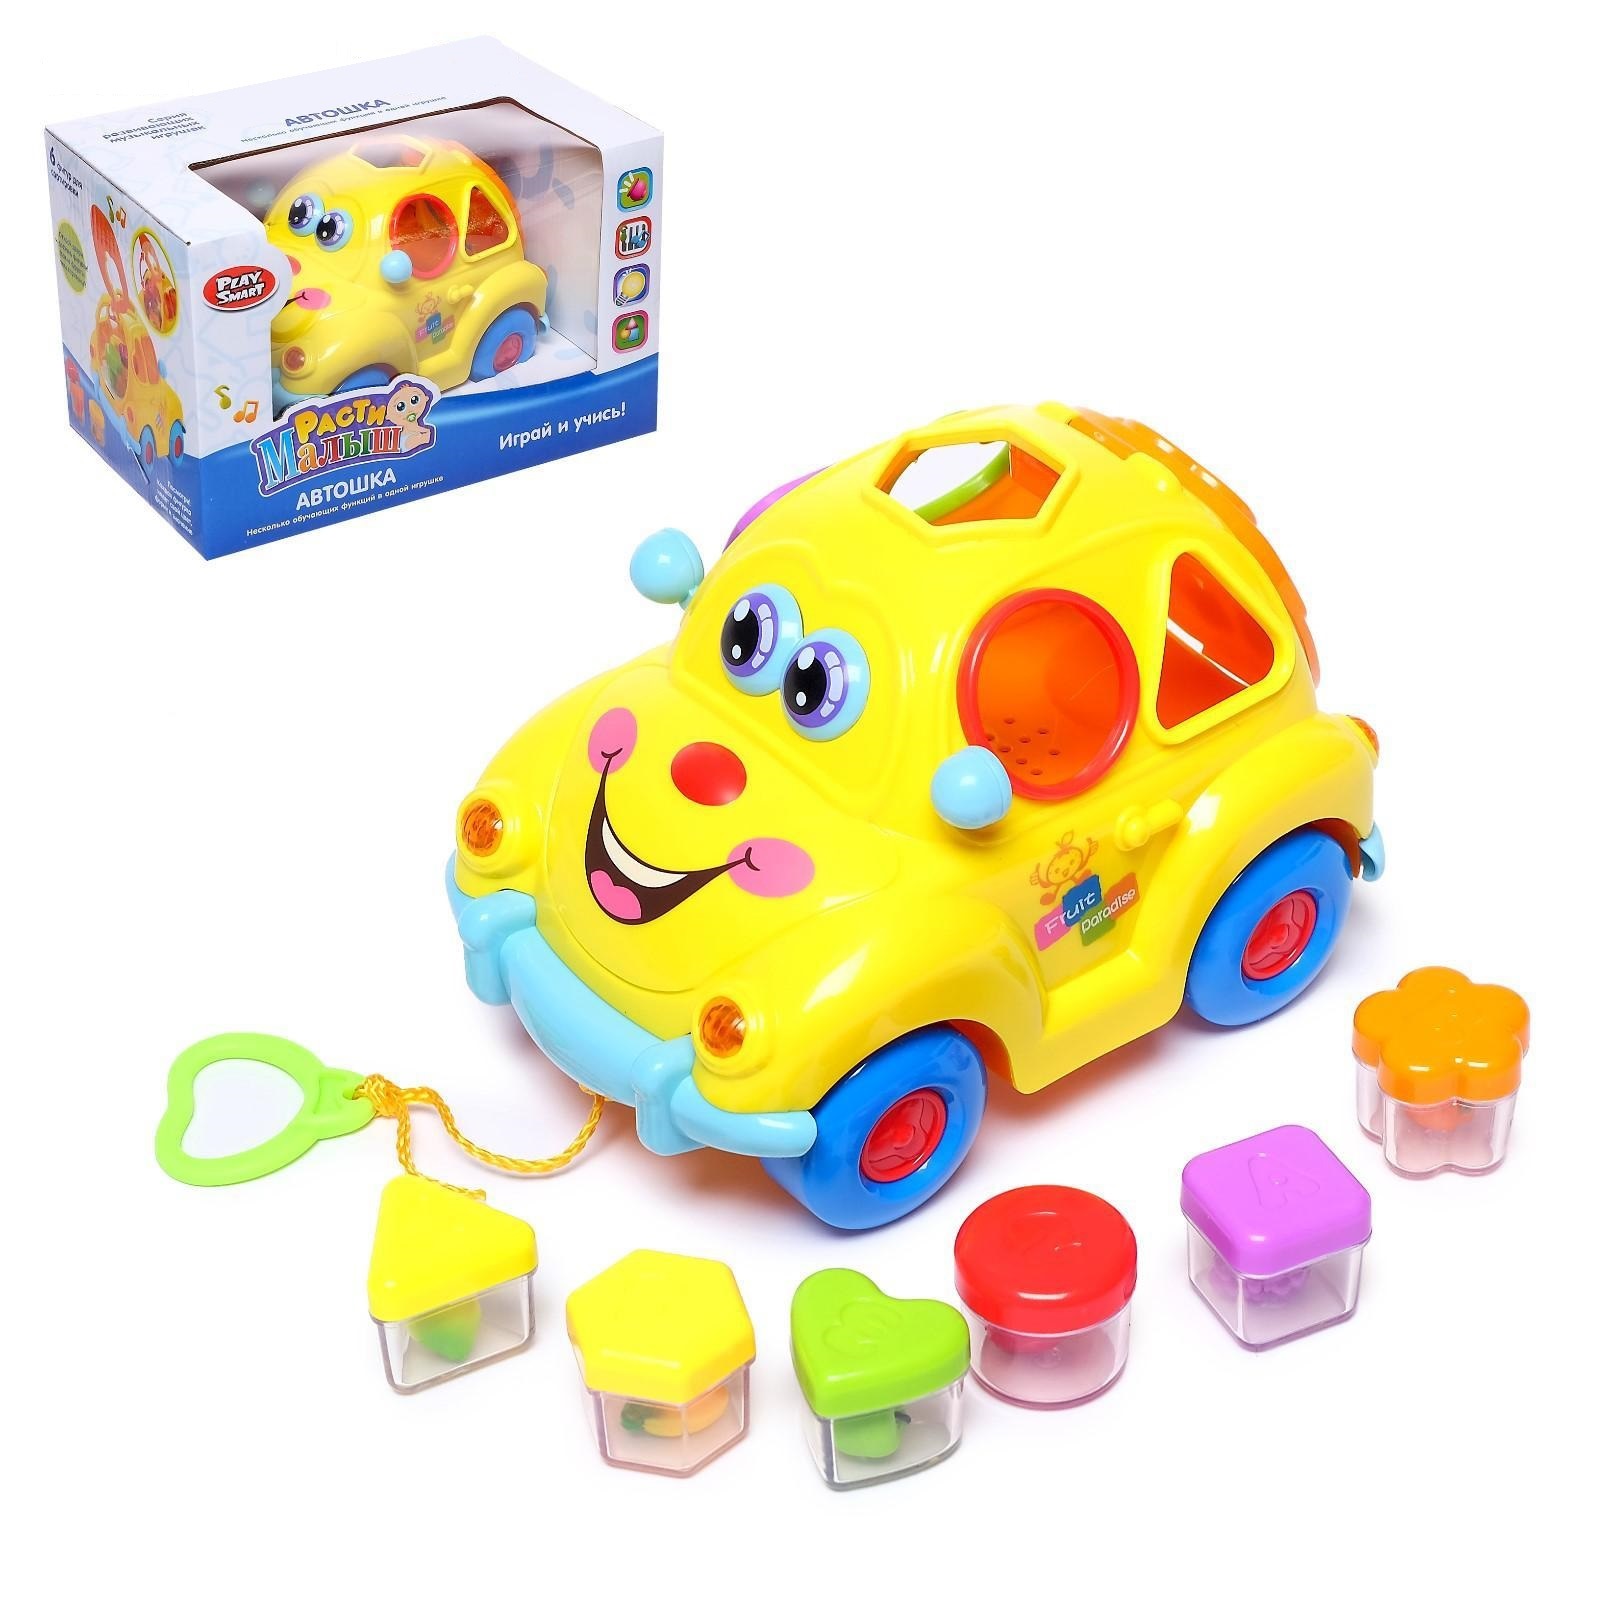 Развивающая игрушка "Машинка", световые и звуковые эффекты,сортер 5384783